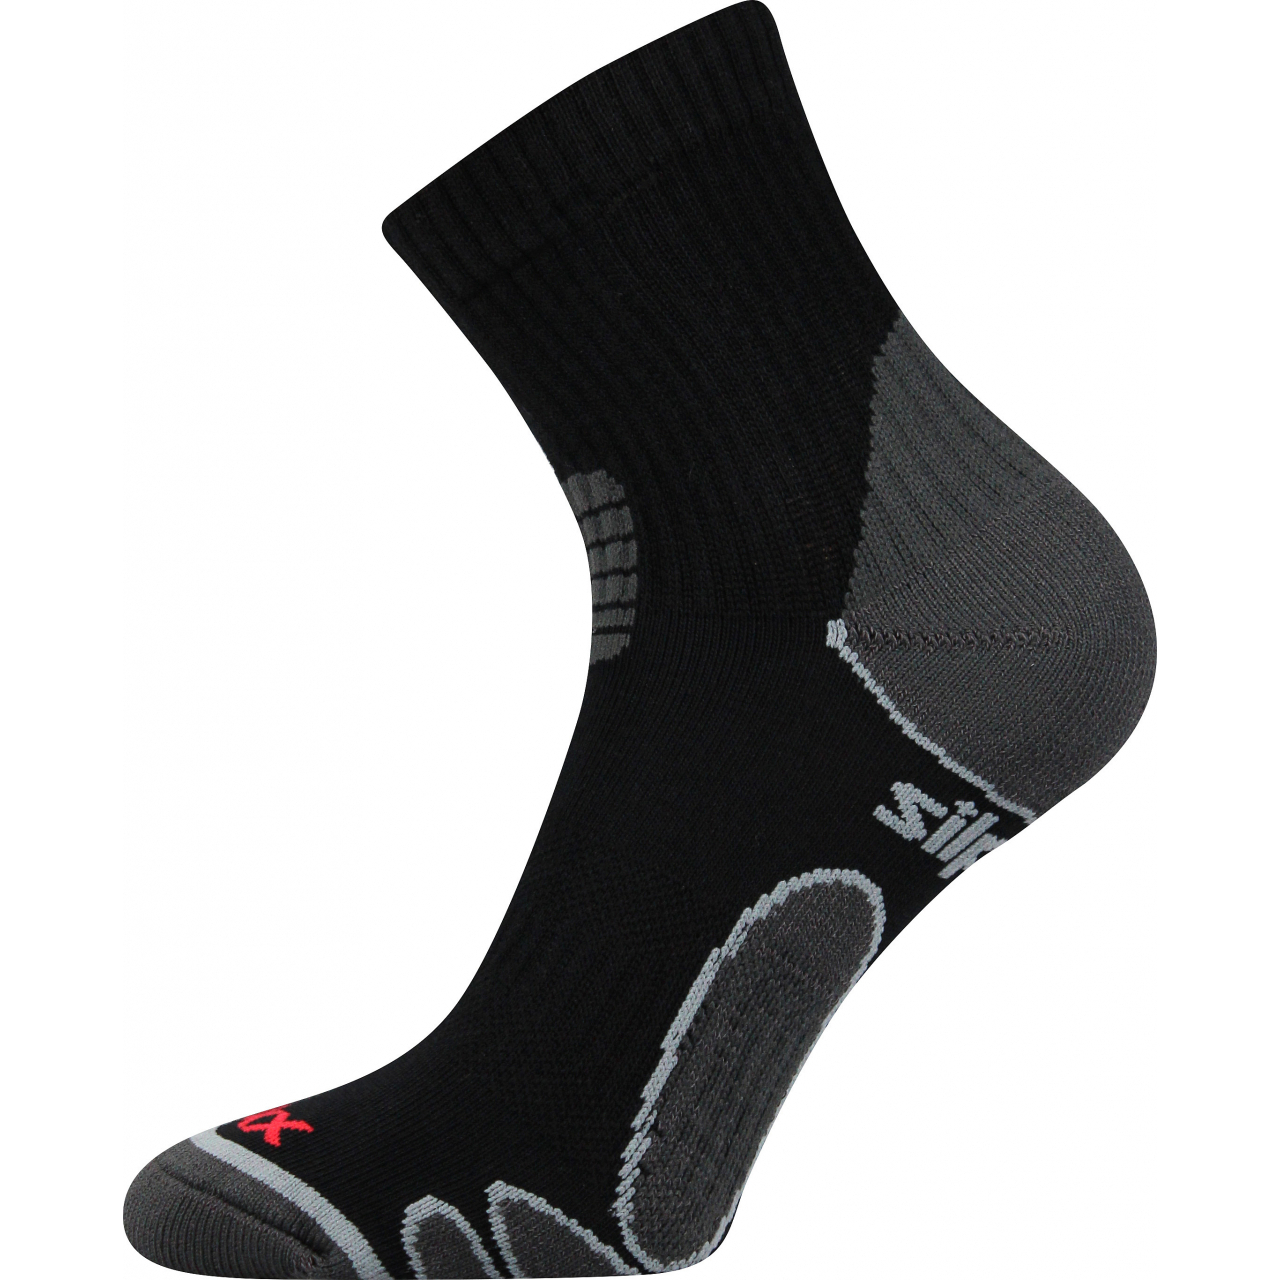 Ponožky sportovní unisex Voxx Silo - černé, 43-46